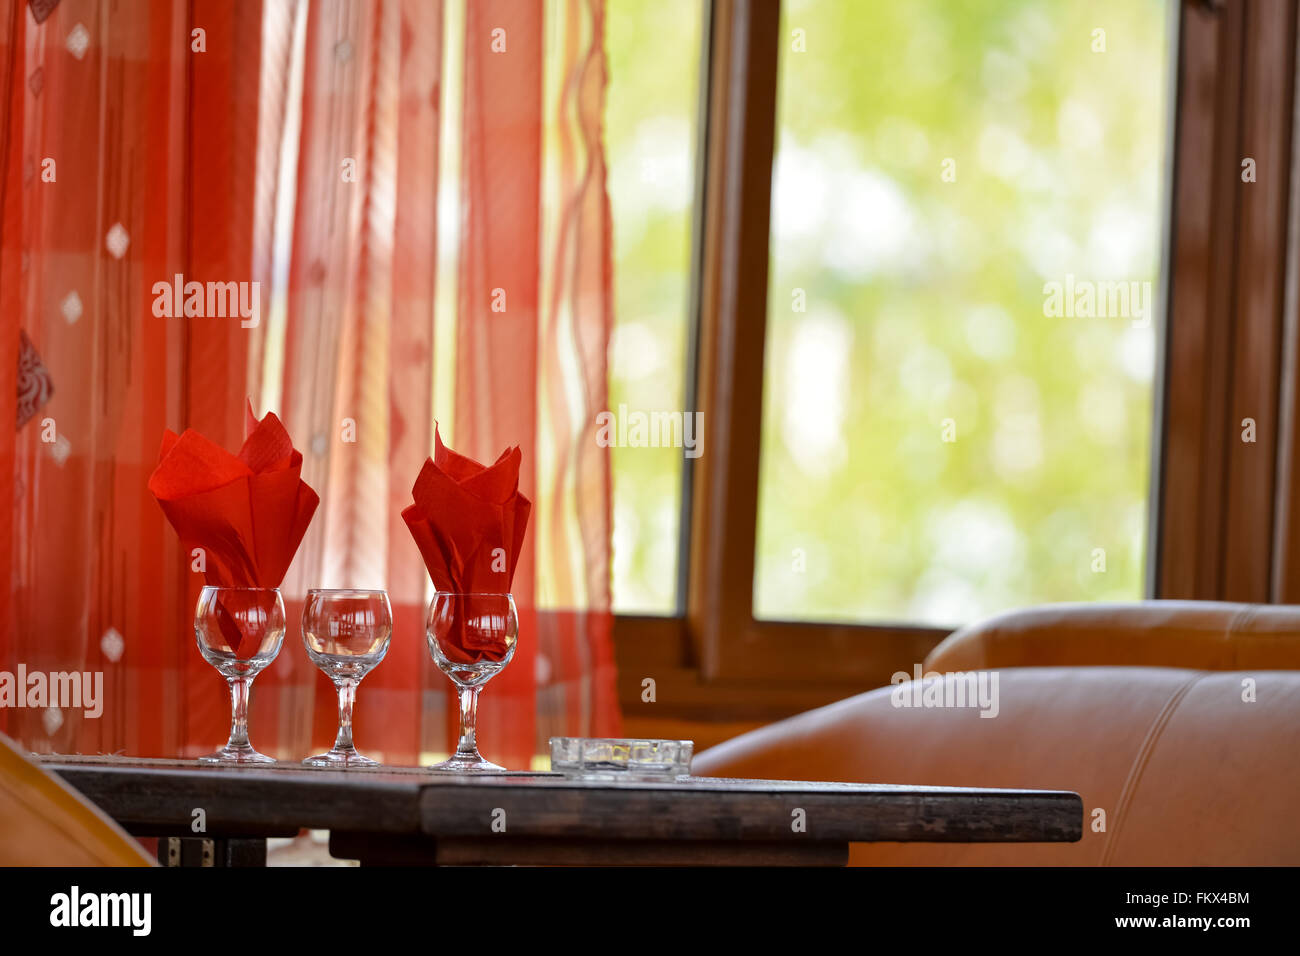 Verres sur une table avec des serviettes de table rouge en eux Banque D'Images